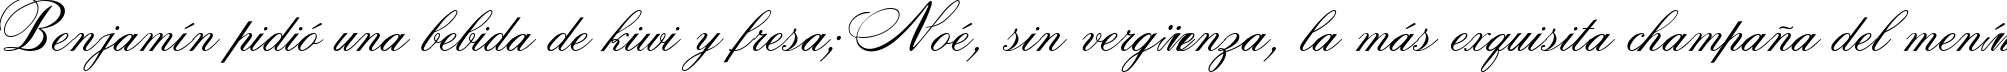 Пример написания шрифтом Rosamunda Two текста на испанском